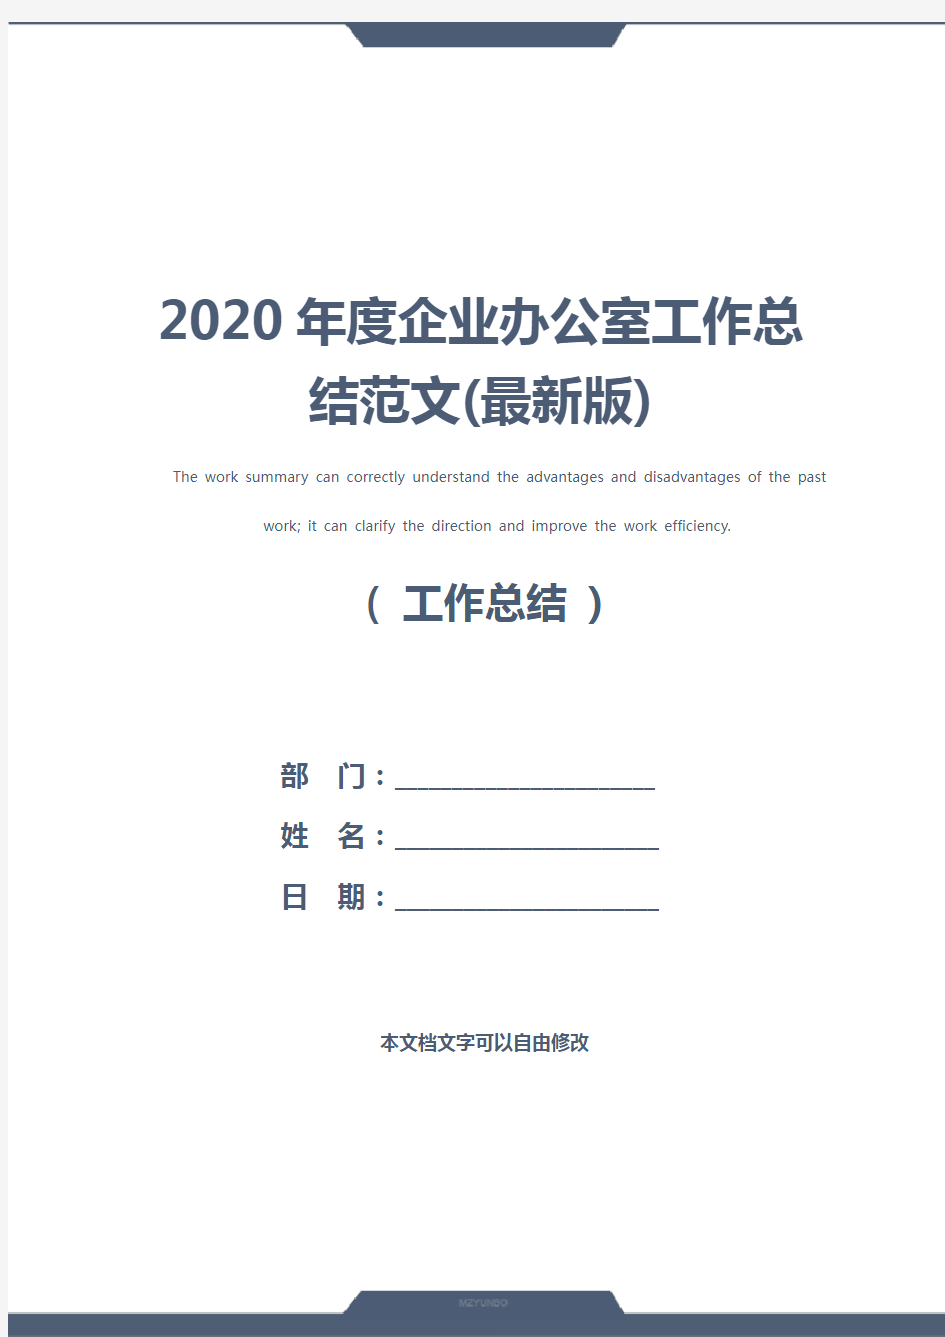 2020年度企业办公室工作总结范文(最新版)